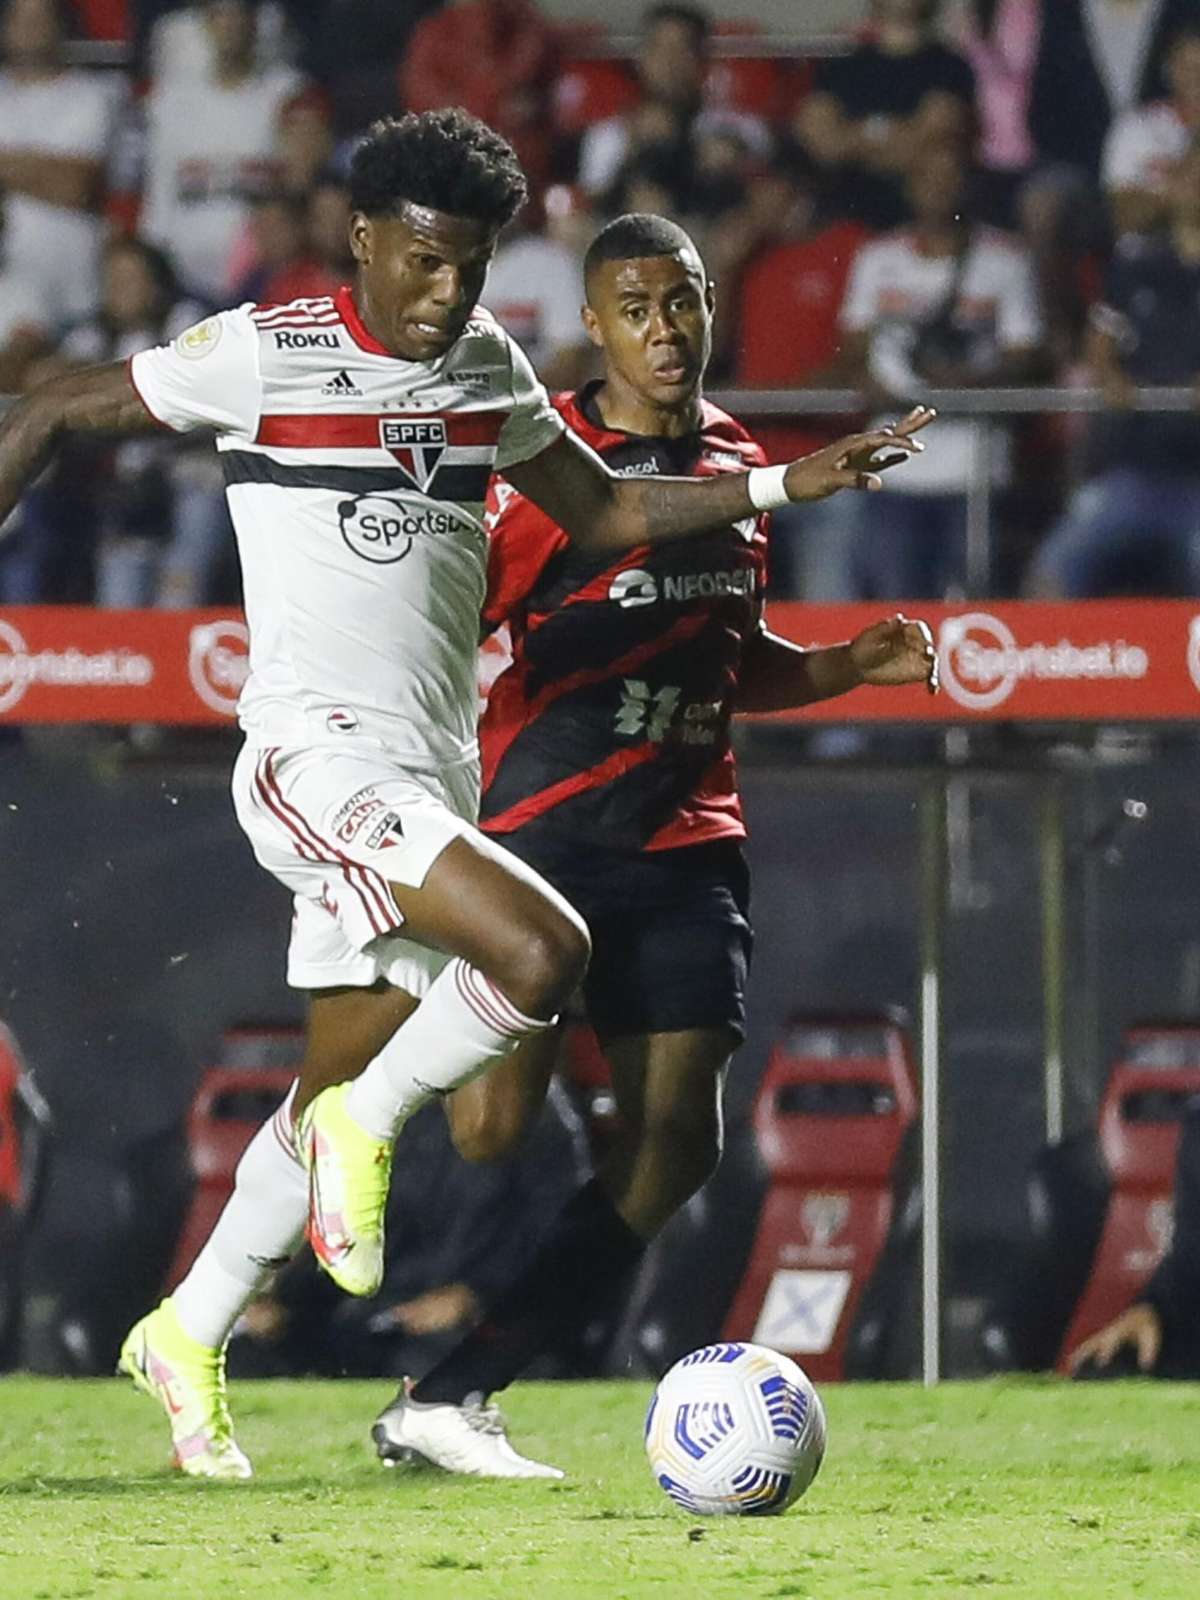 Em tarde de 'Pablos', Athletico-PR e São Paulo empatam pelo